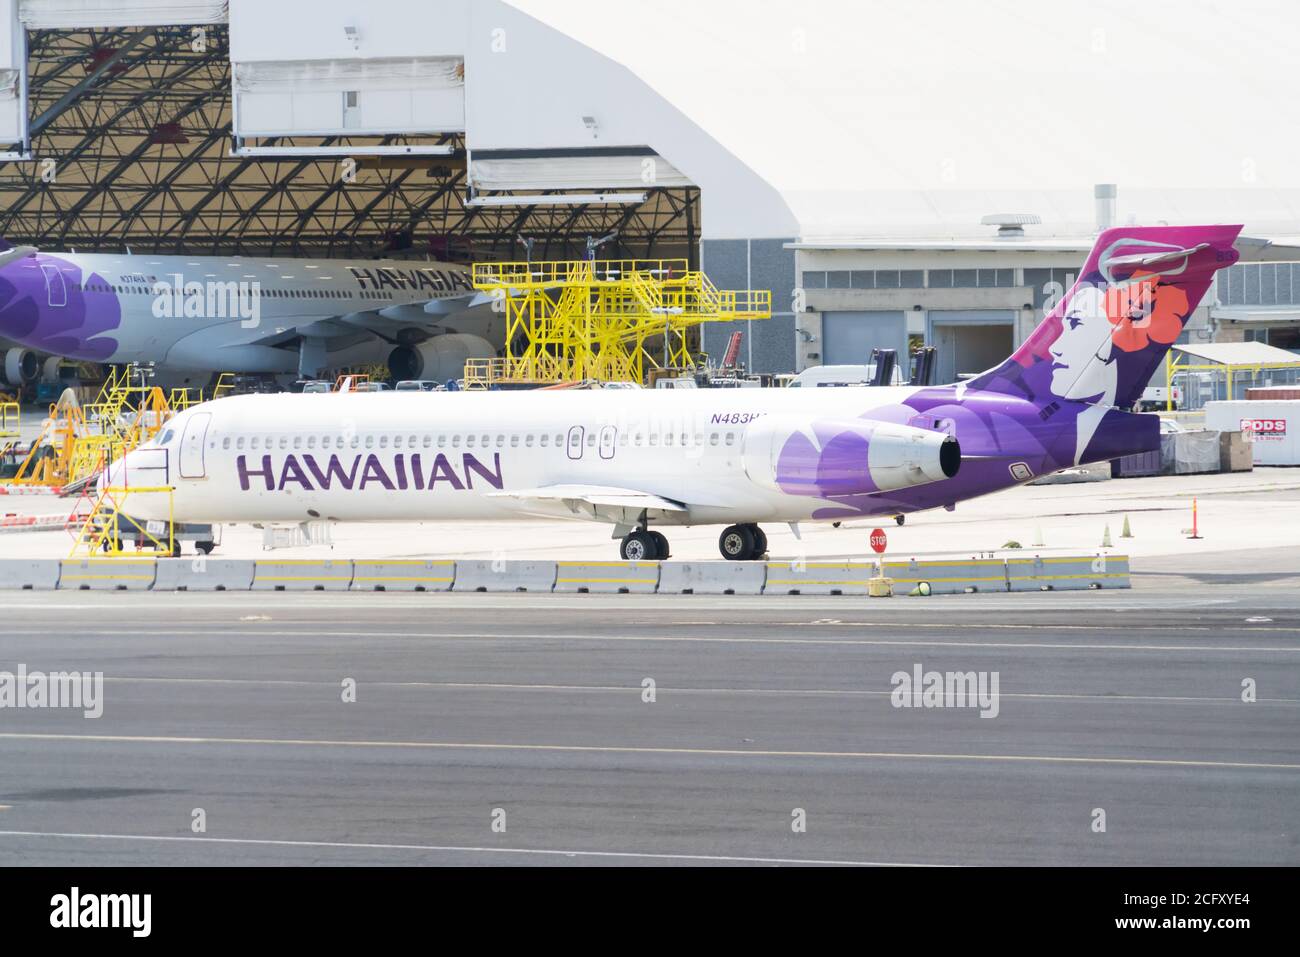 Aéroport d'Honolulu, Hawaï - 27 septembre 2019, île d'Oahu, Hawaï, États-Unis Banque D'Images